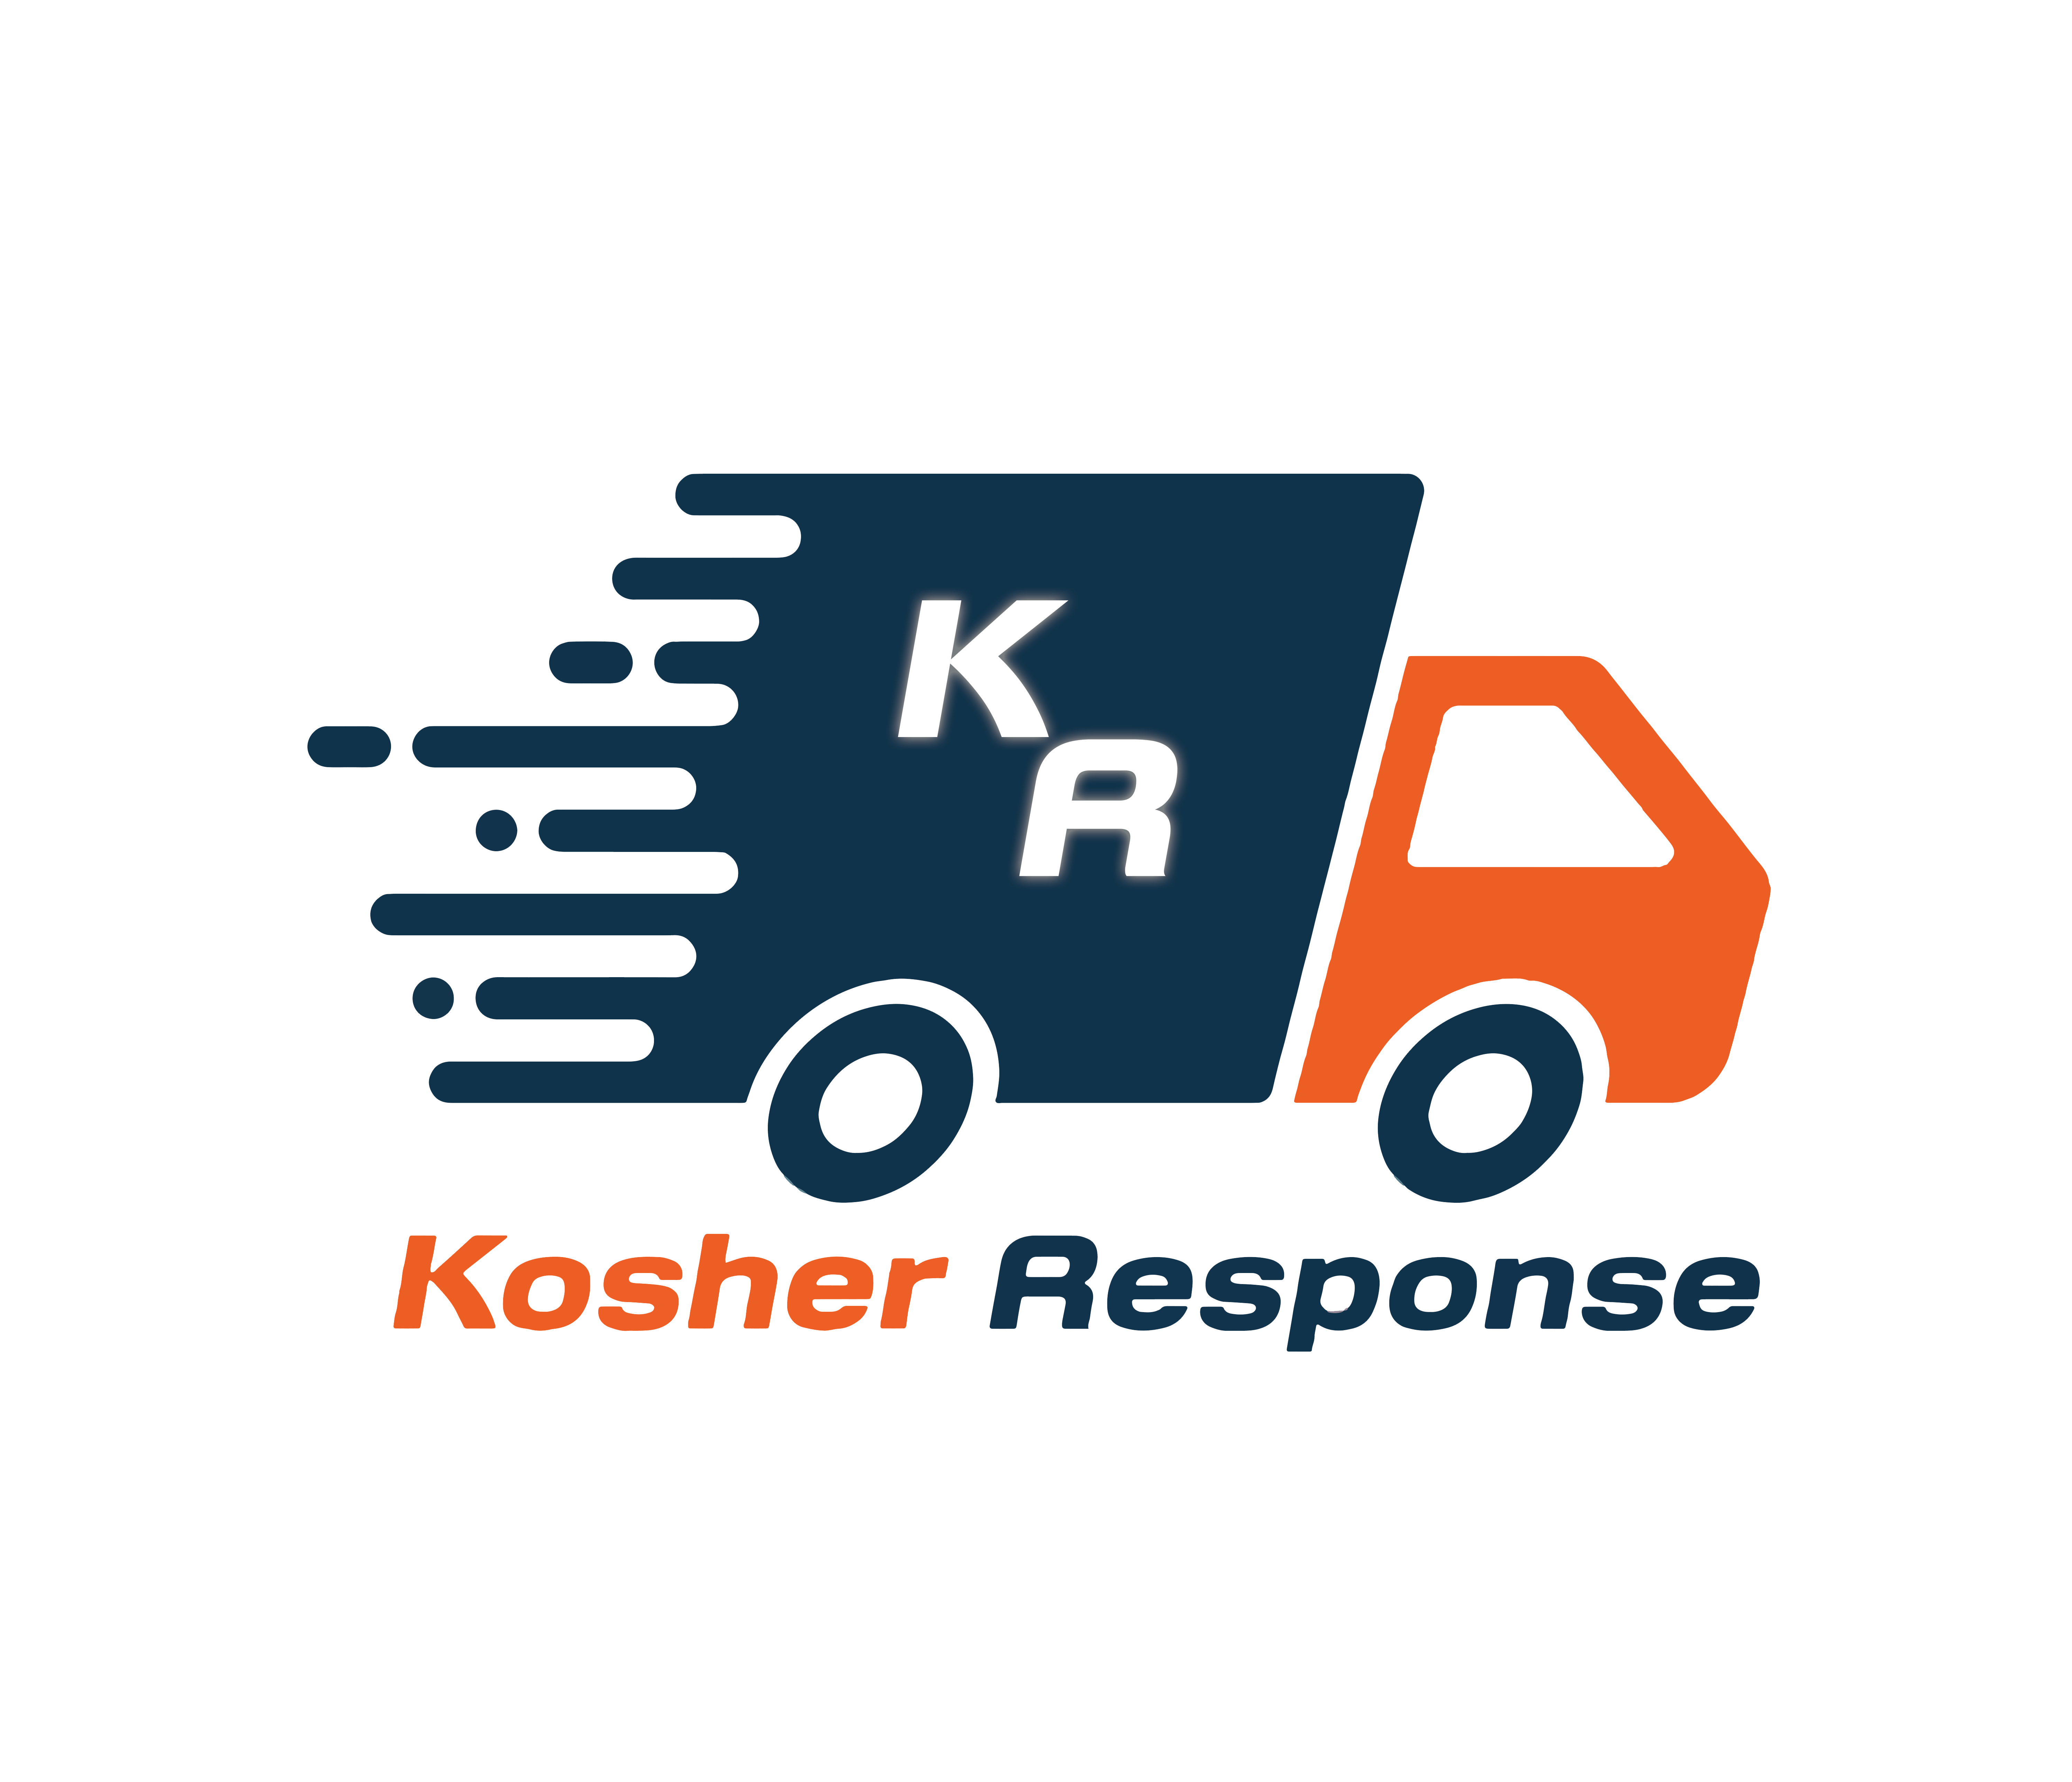 Kosher Response Inc. logo